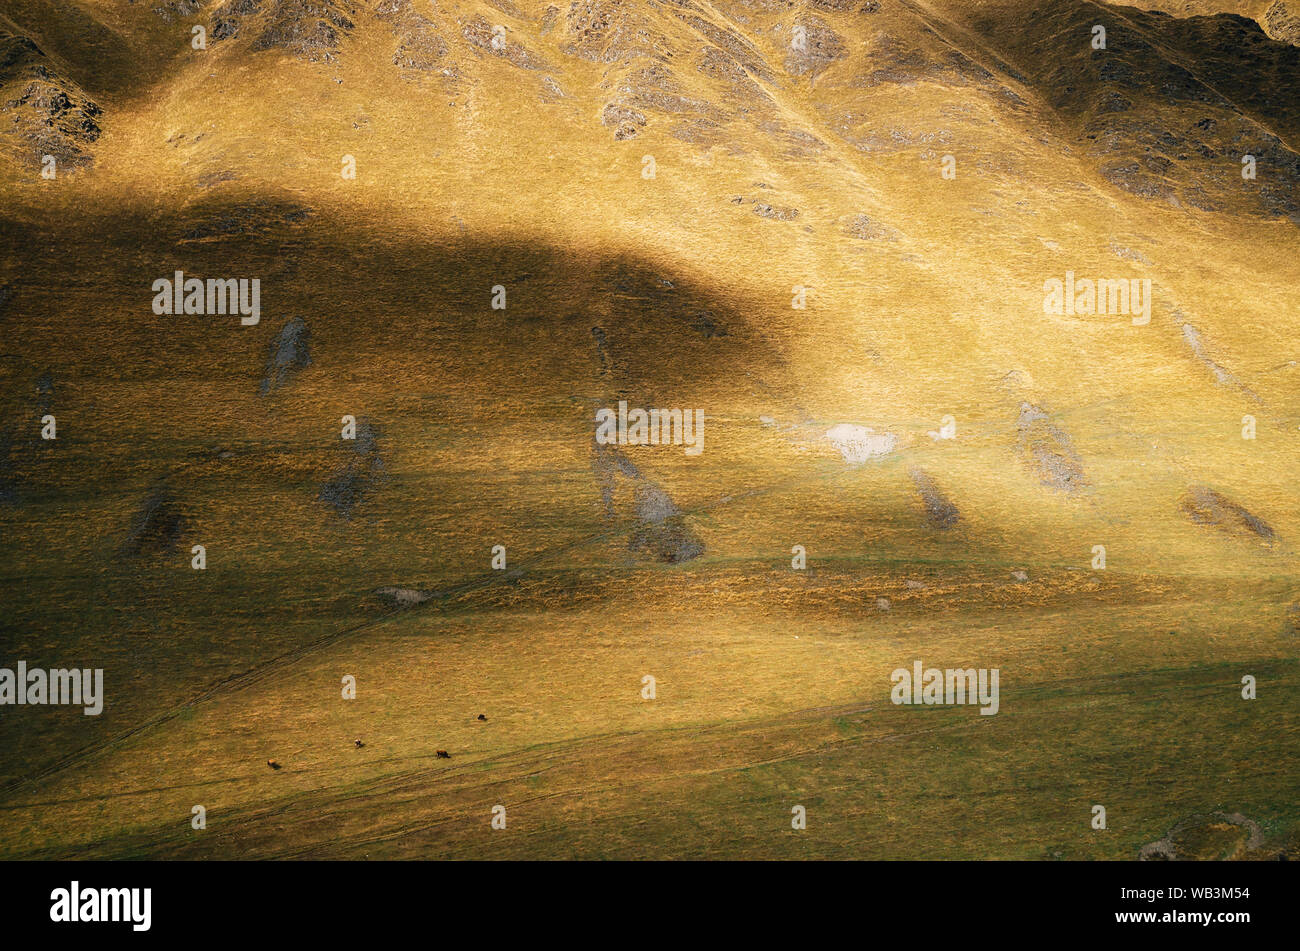 Herbstliche Landschaft mit Kuh Weiden auf großen Rasen, die Hügel Almen. Die Berghänge in Ushguli, obere Swanetien, Georgien Stockfoto